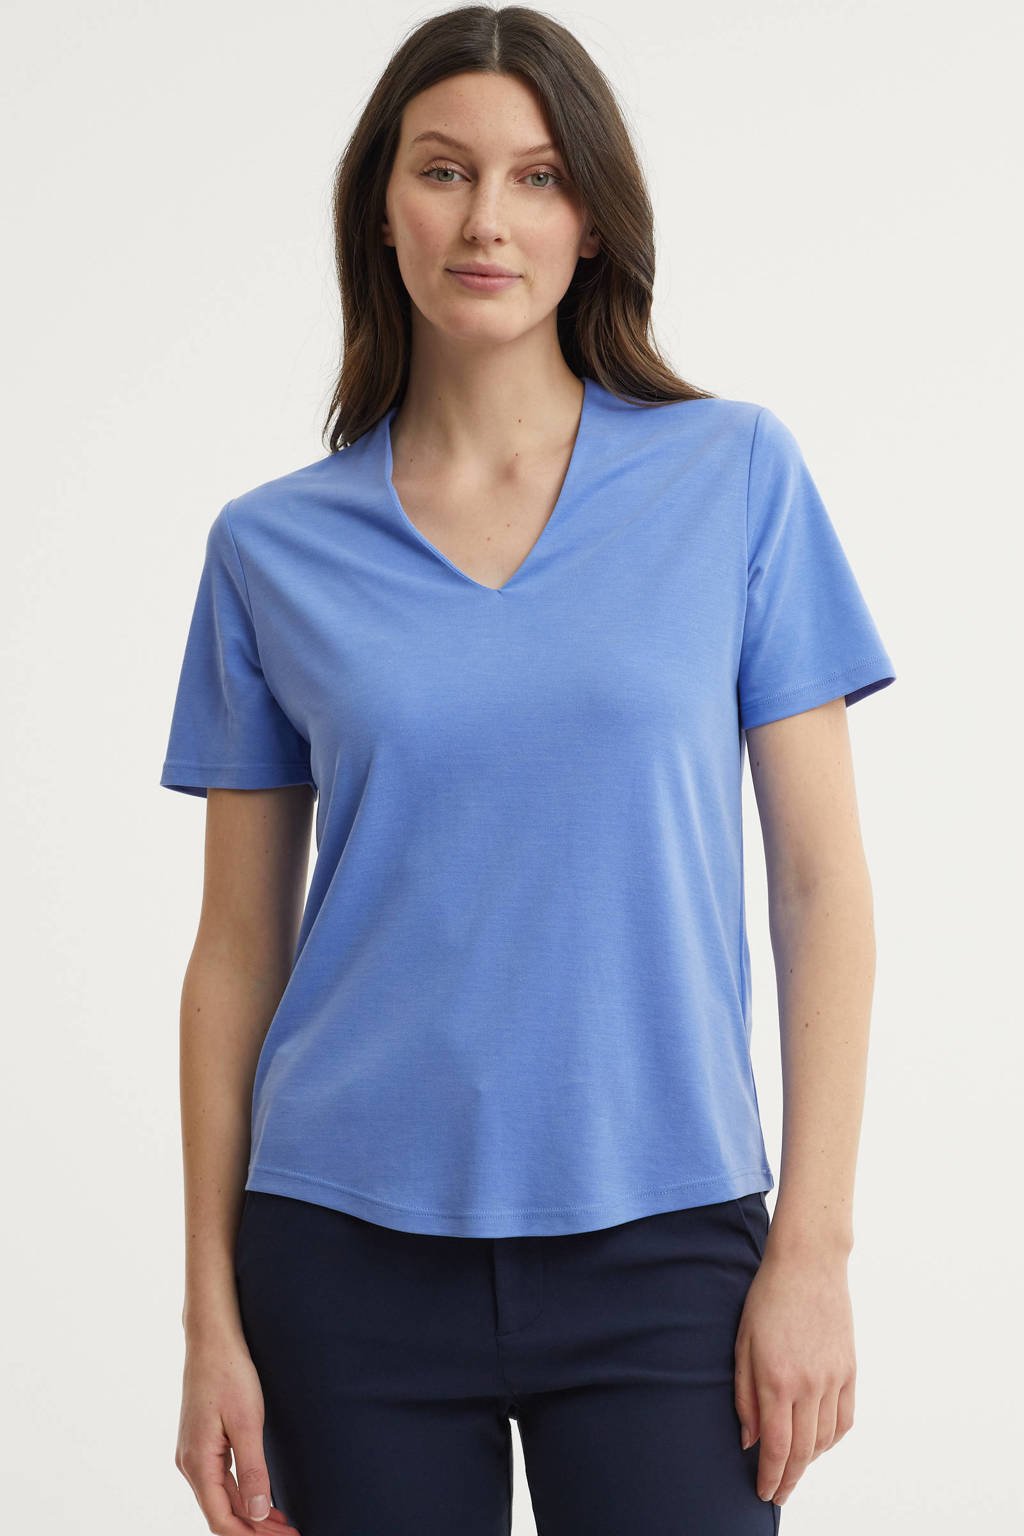 Blauwe dames FREEQUENT T-shirt van modal met korte mouwen en V-hals